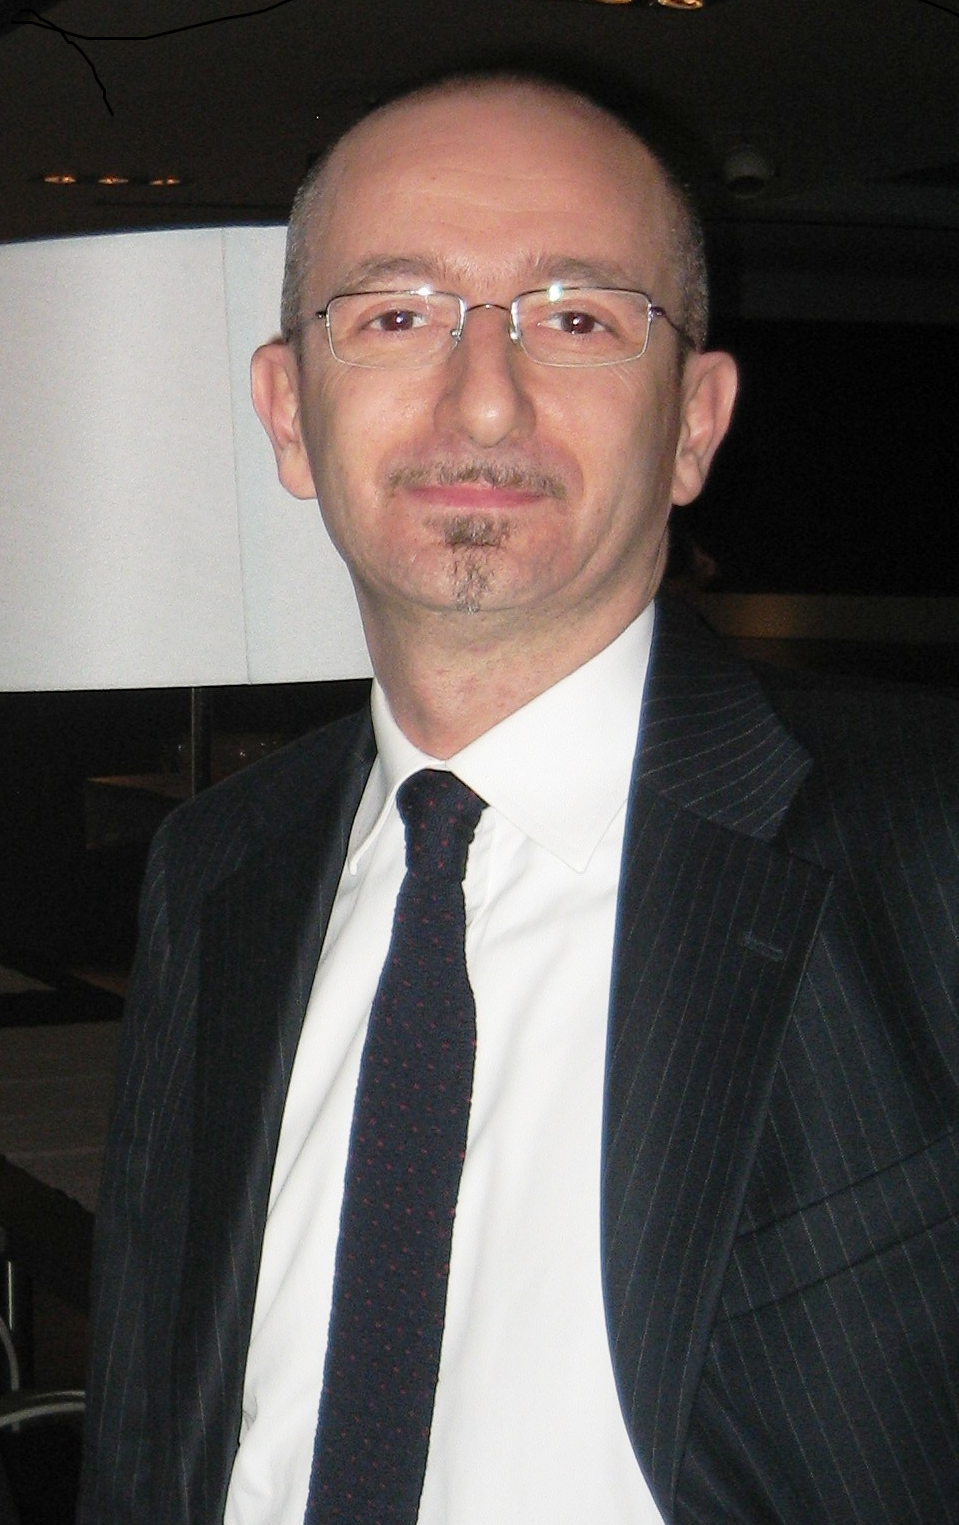 Michele Dalmazzoni